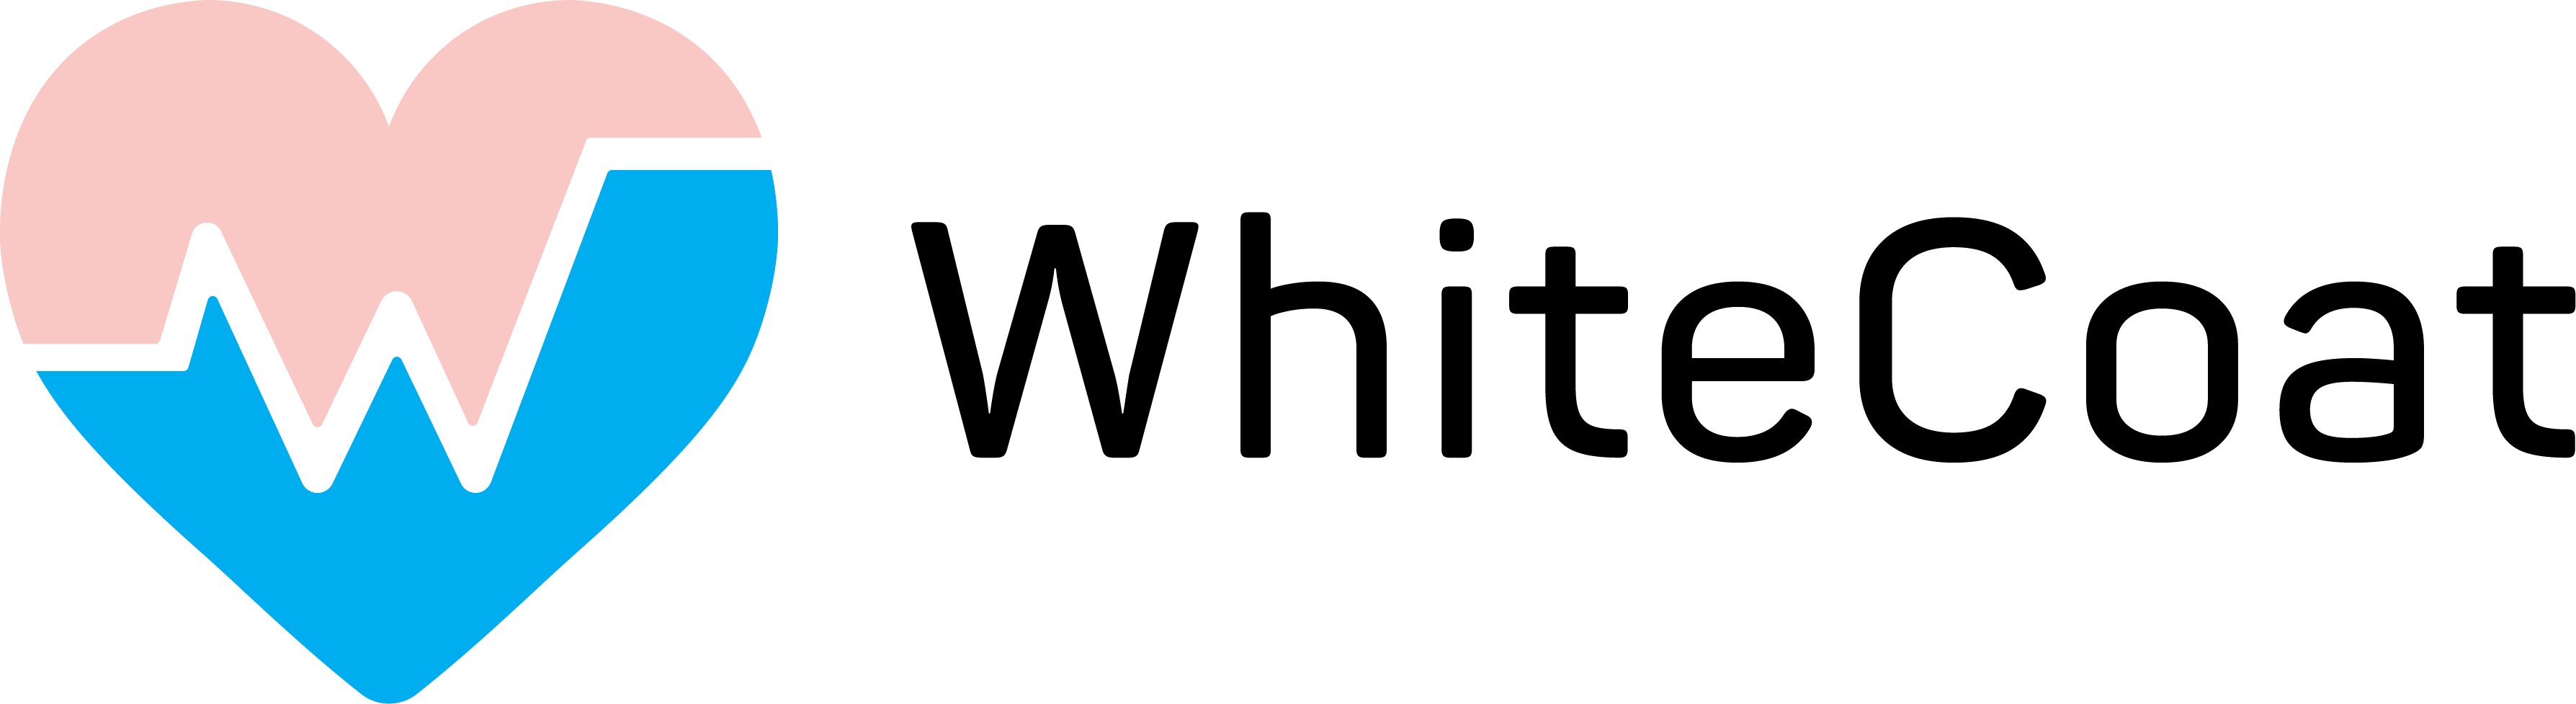 whitecode healthcare app